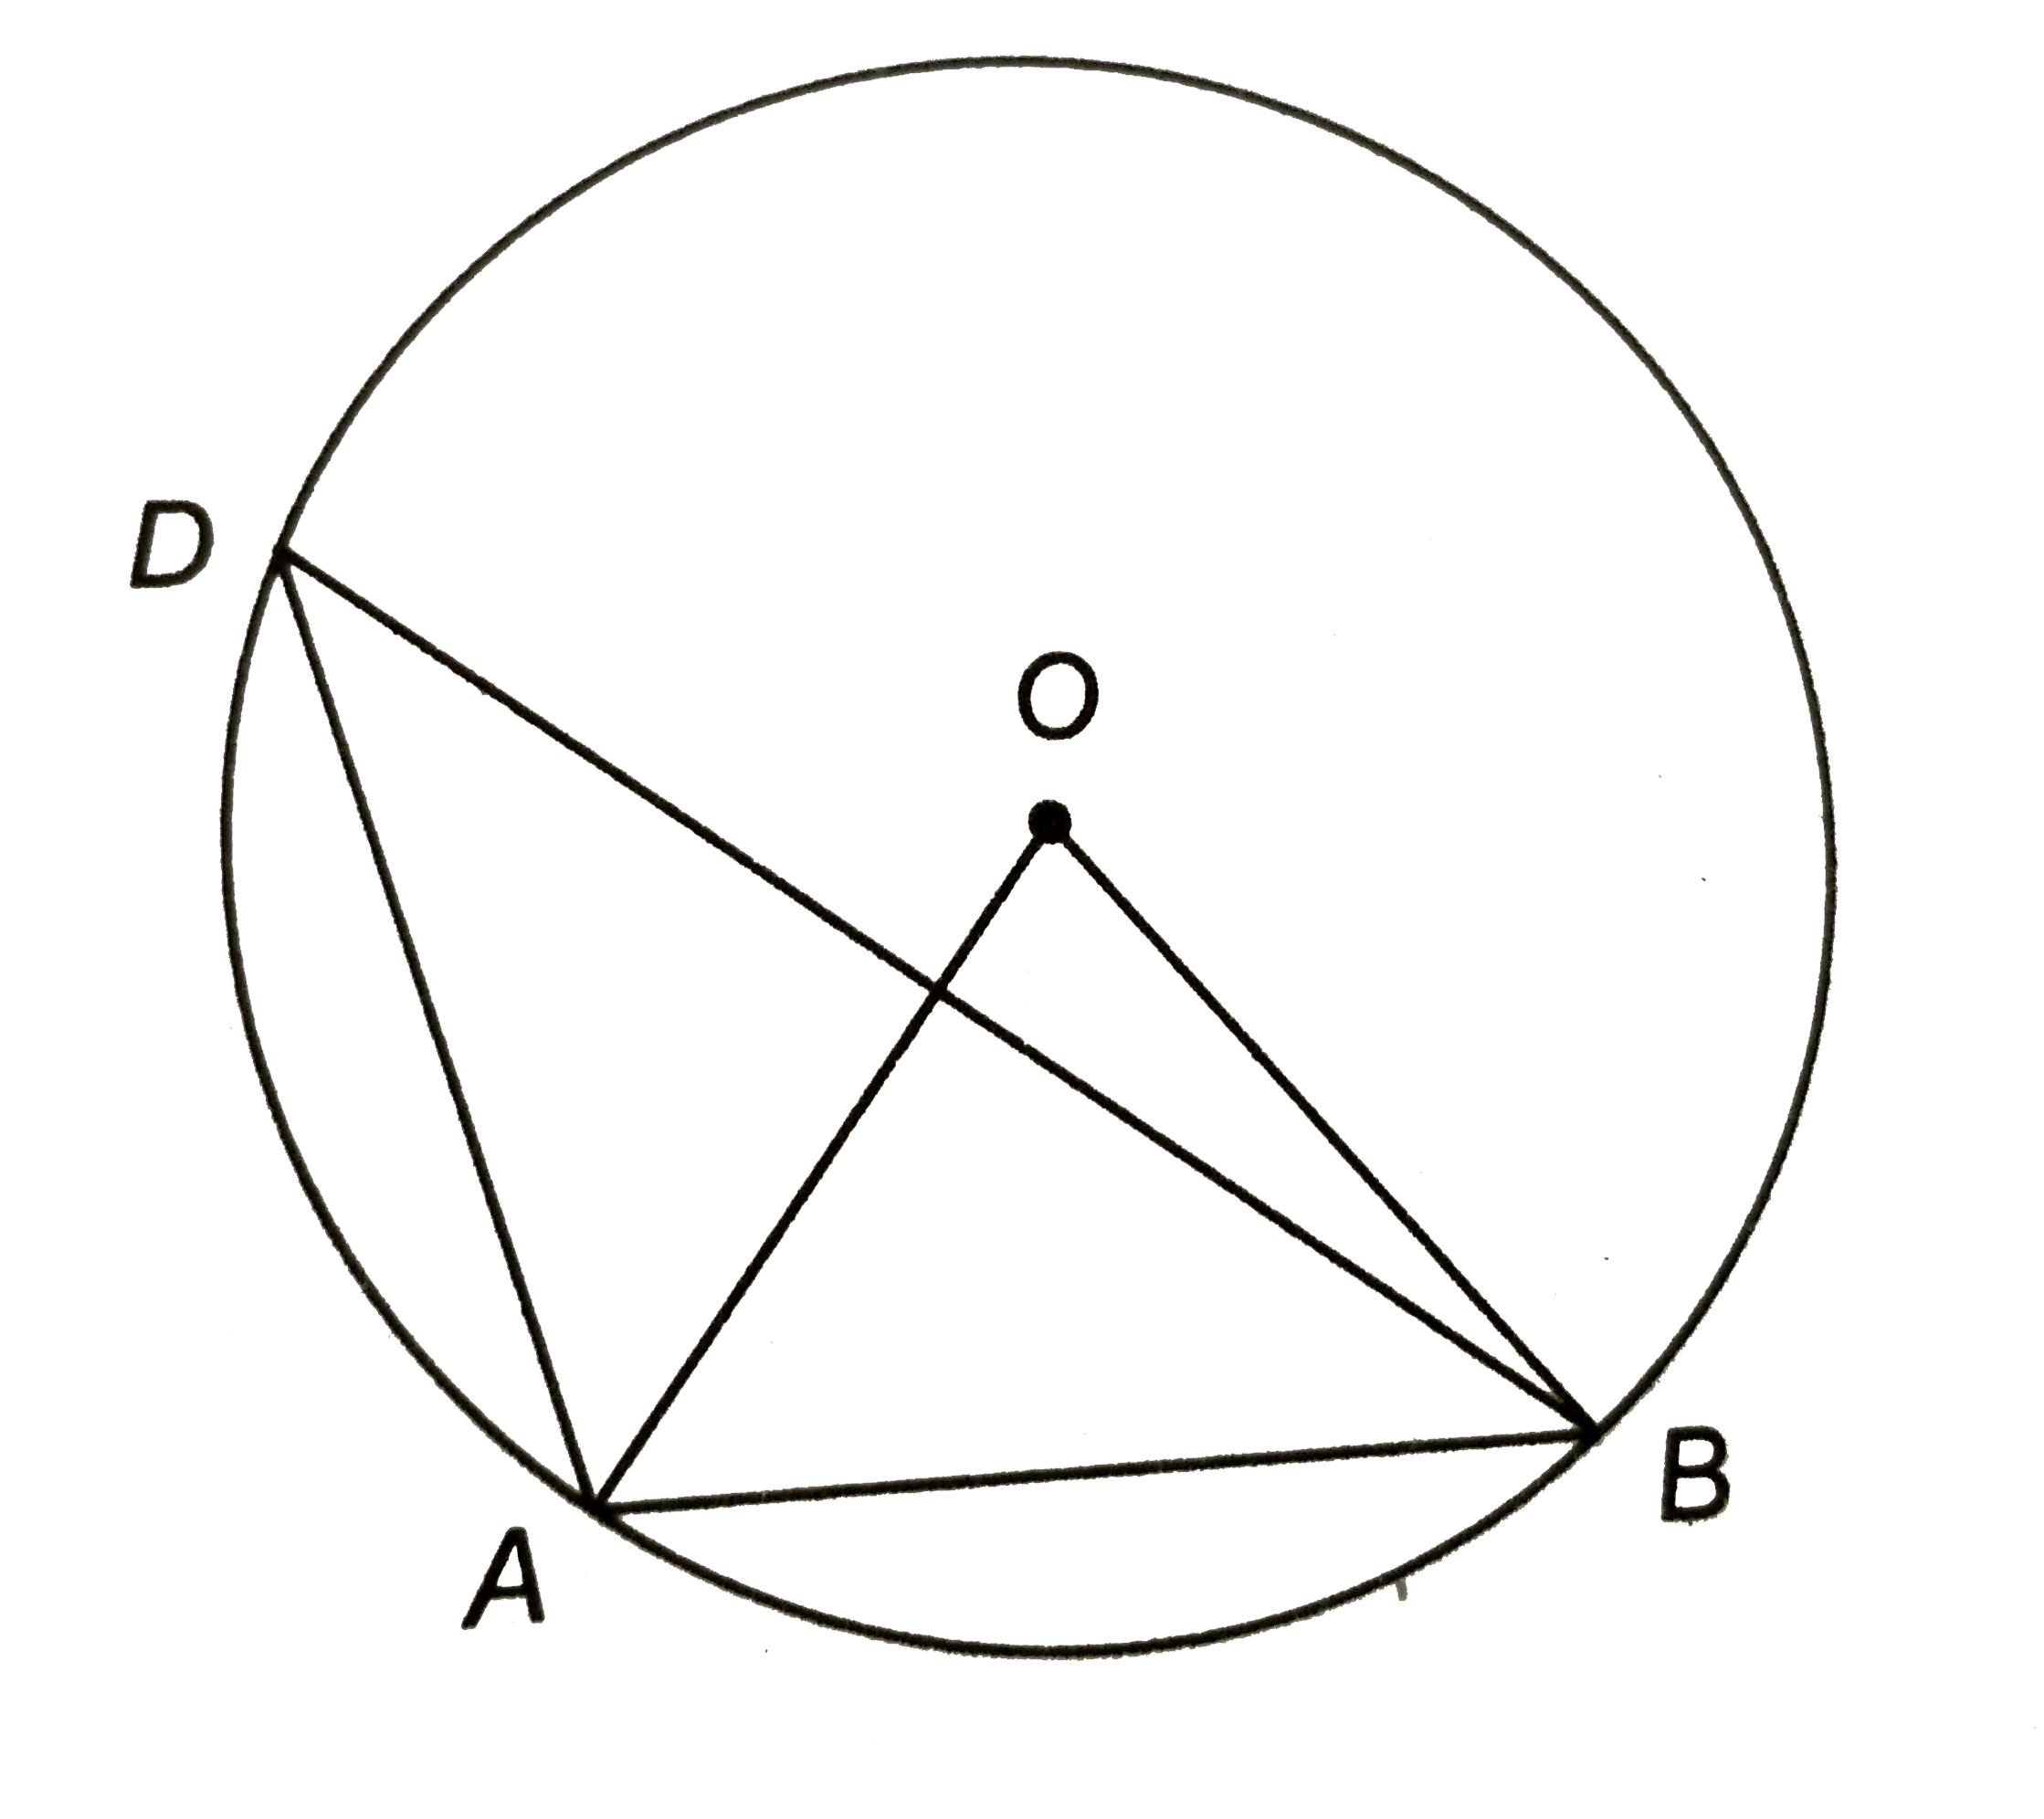 संलग्न चित्र में, 'O' वृत्त का केन्द्र है | यदि जीवा AB वृत्त की त्रिज्या के बराबर है, तो angleADB का मान ज्ञात कीजिए |